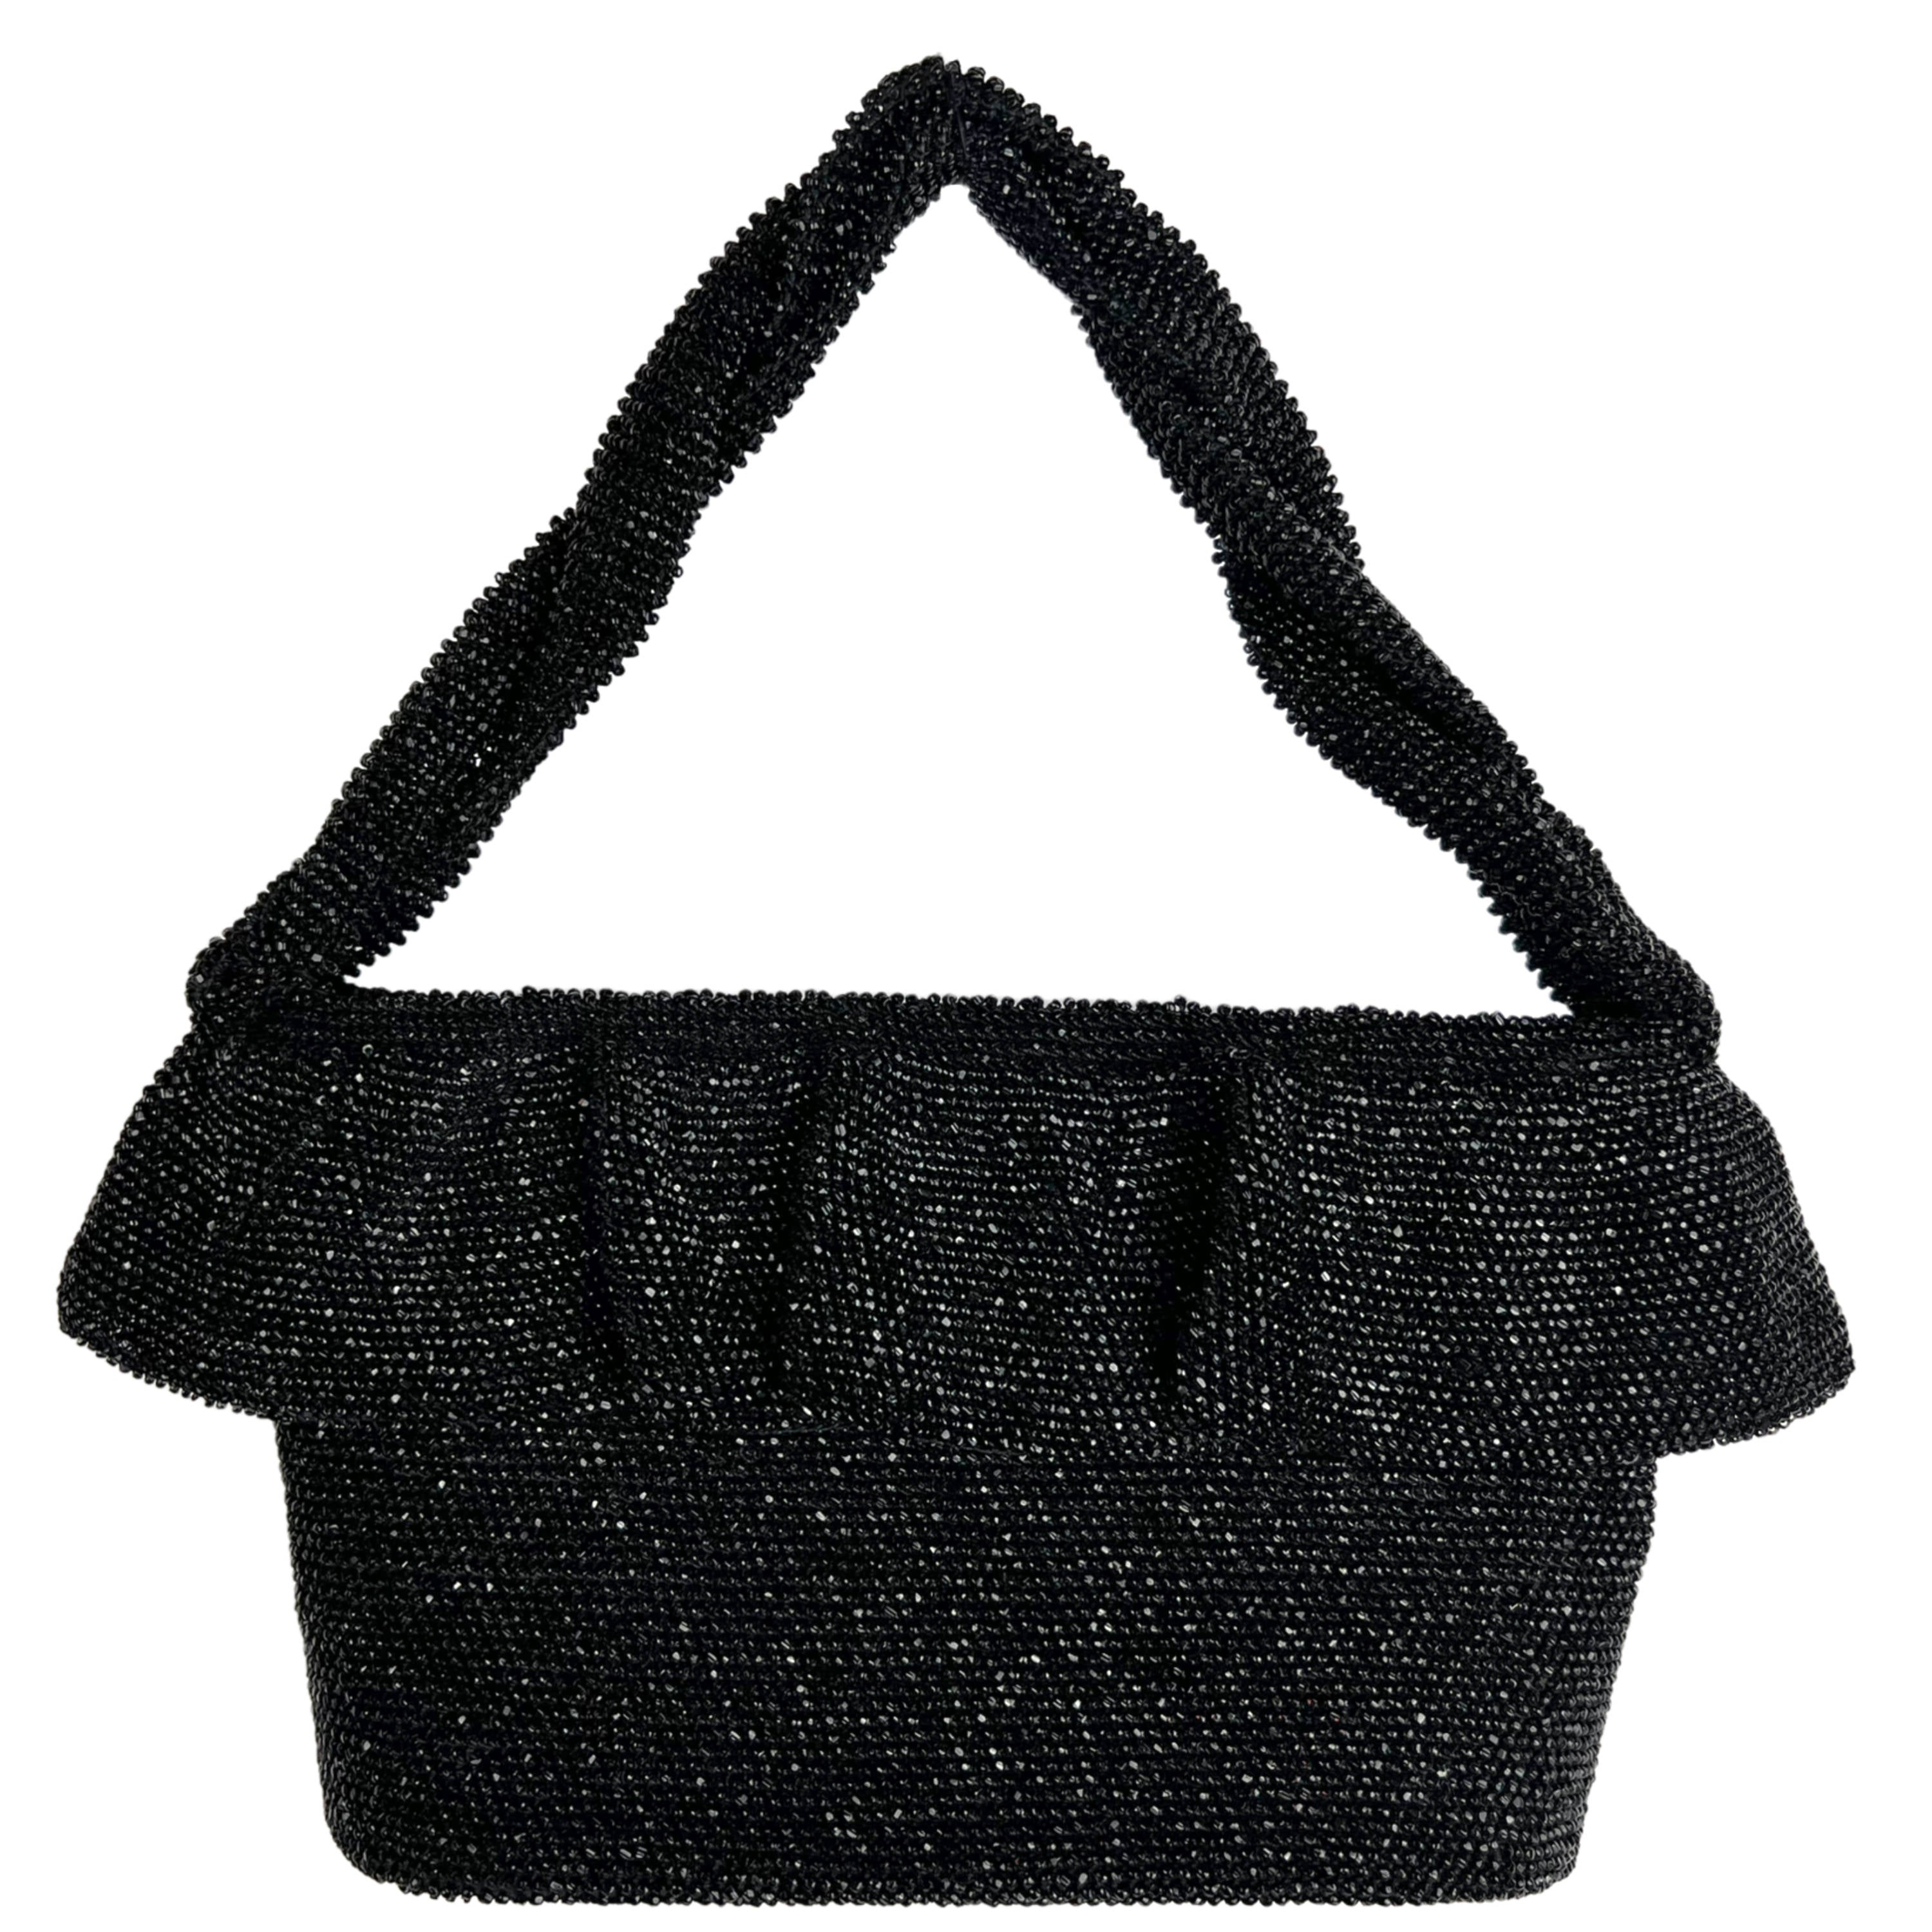 Black Evening Bag with Greek Key Details – Vintage Couture